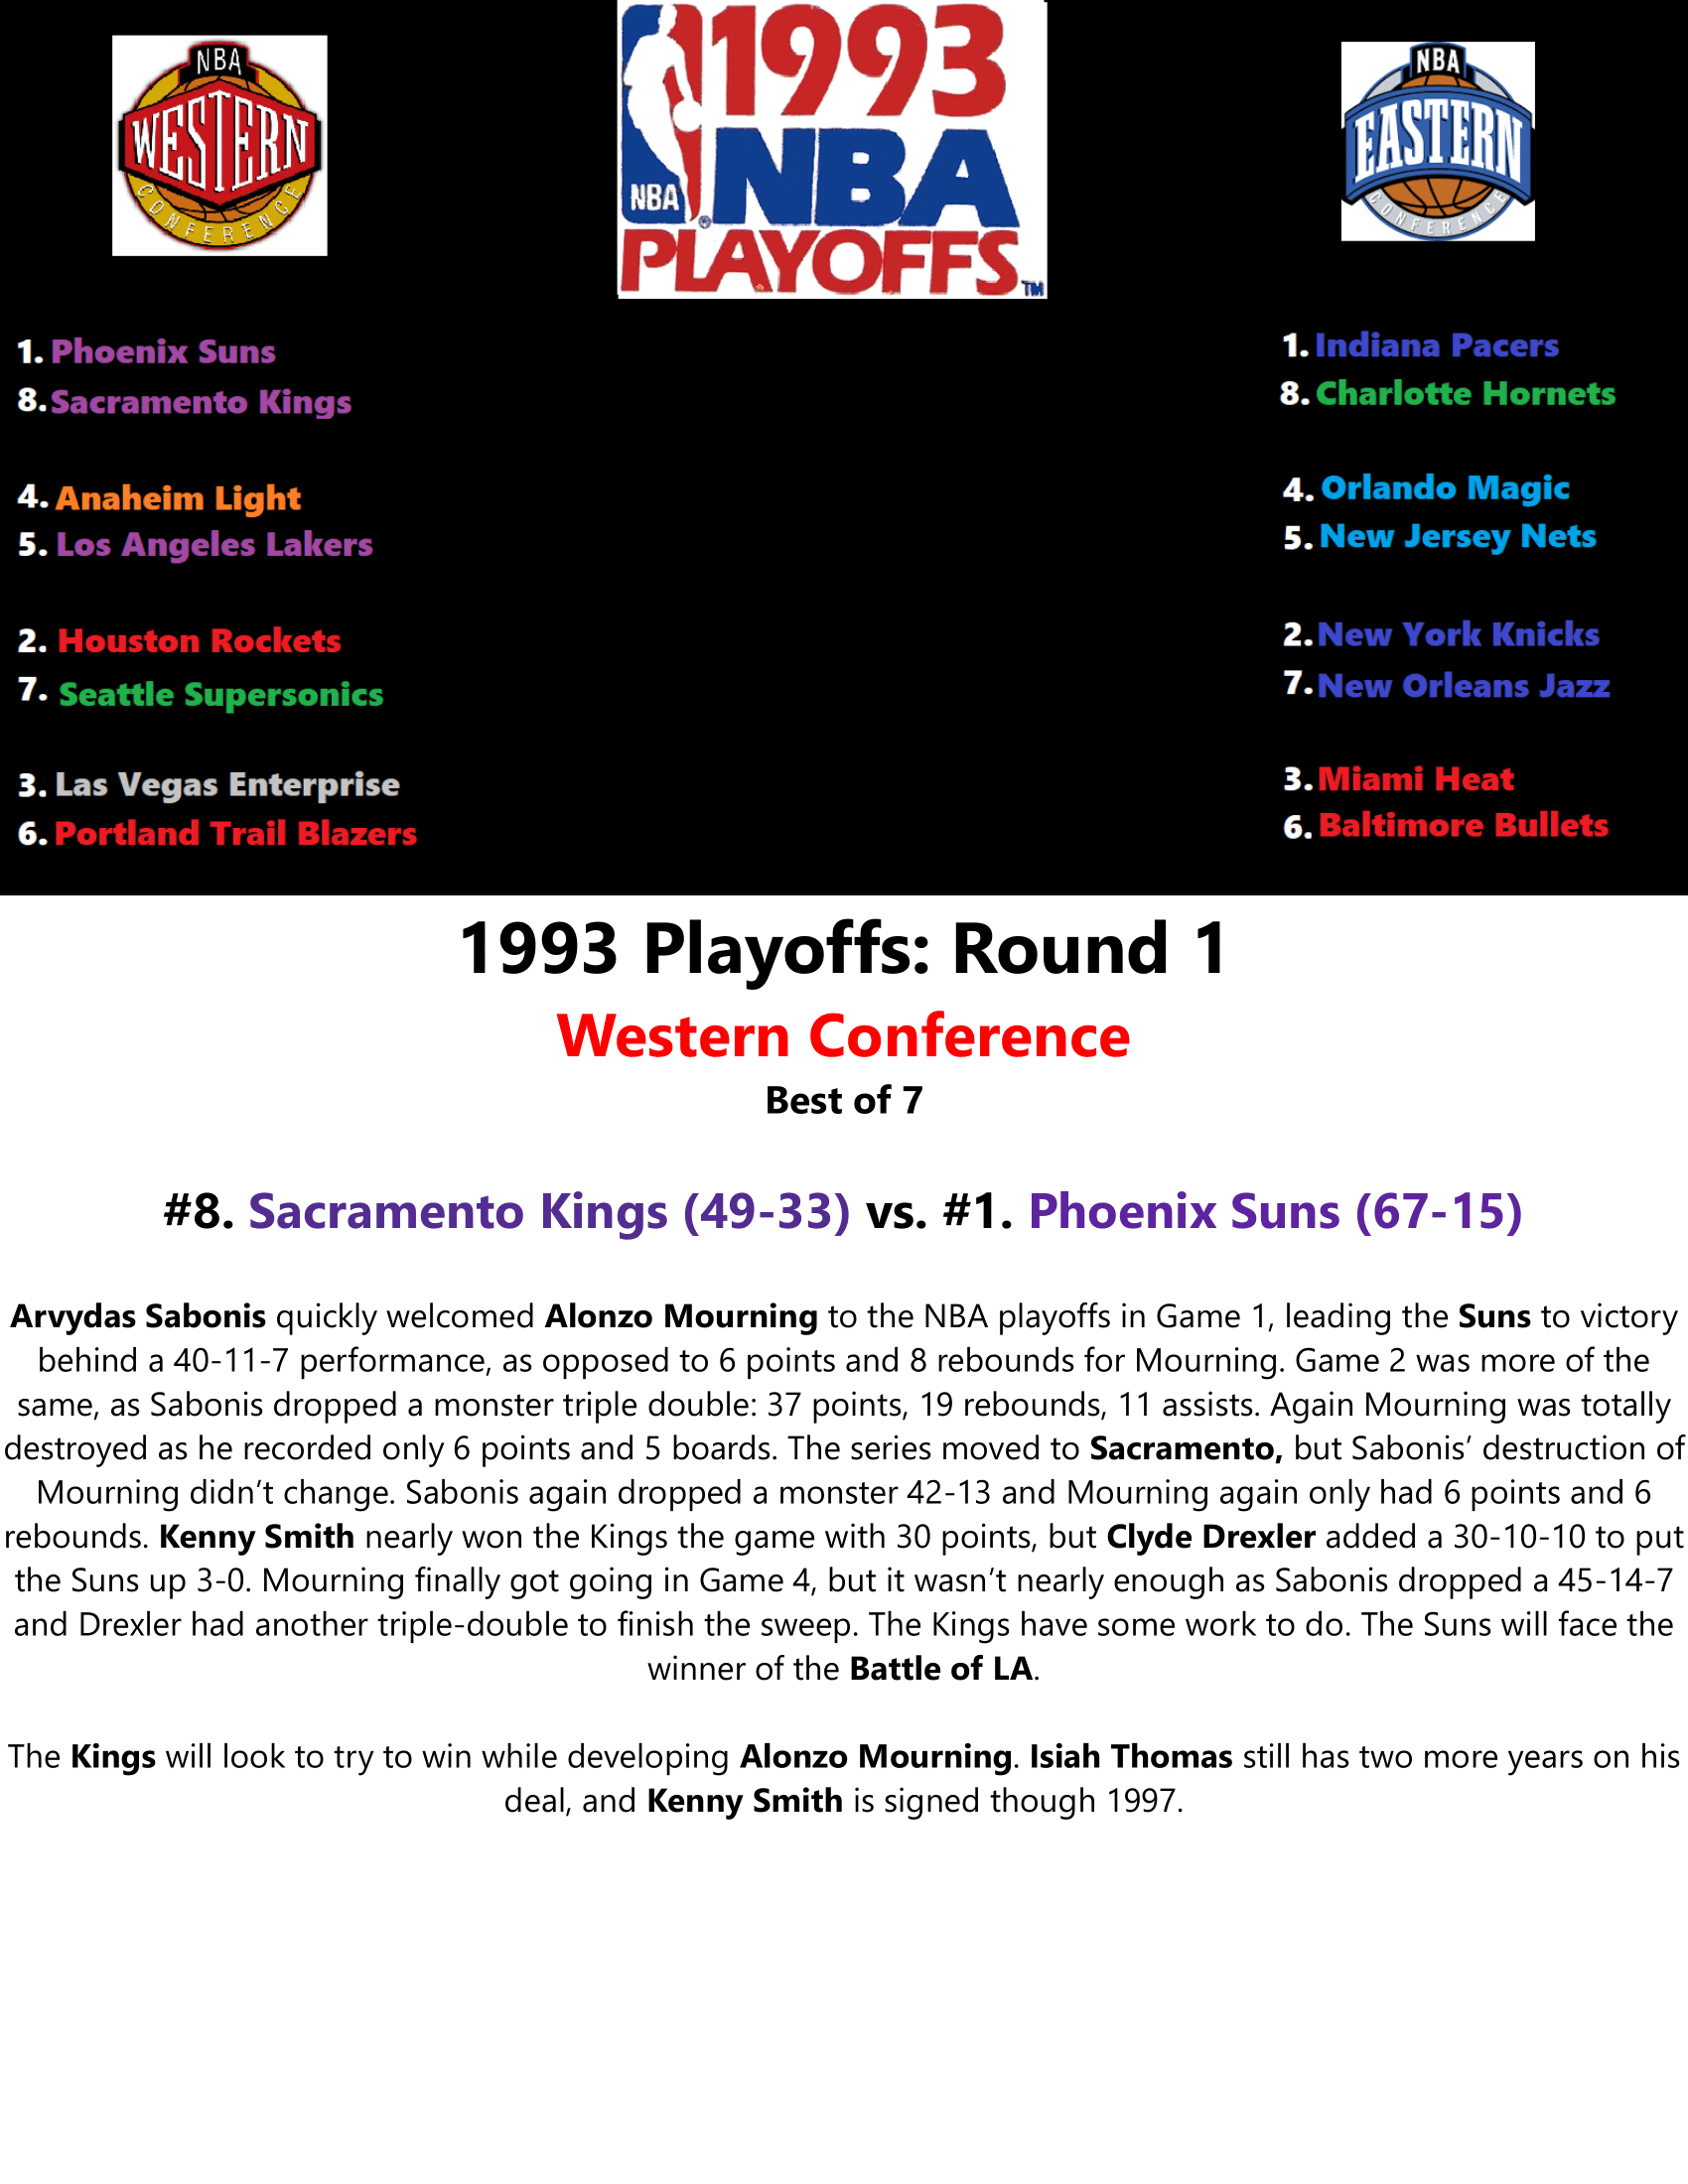 92-93-Part-5-NBA-Playoffs-01.png